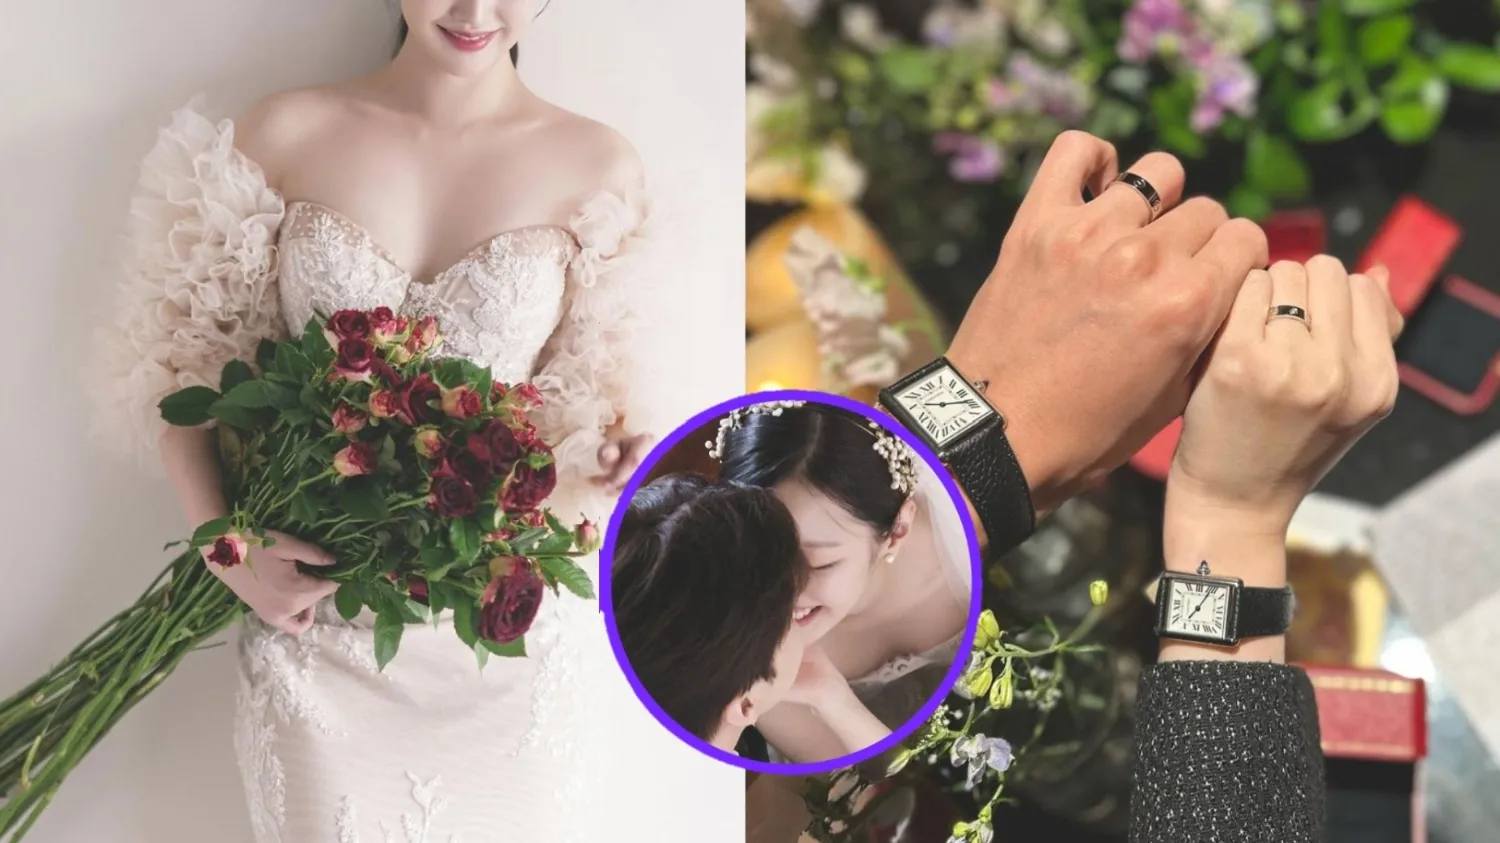 ESTE ídolo feminino compartilha vídeo de proposta romântica, carta do noivo: 'Você quer se casar comigo?'